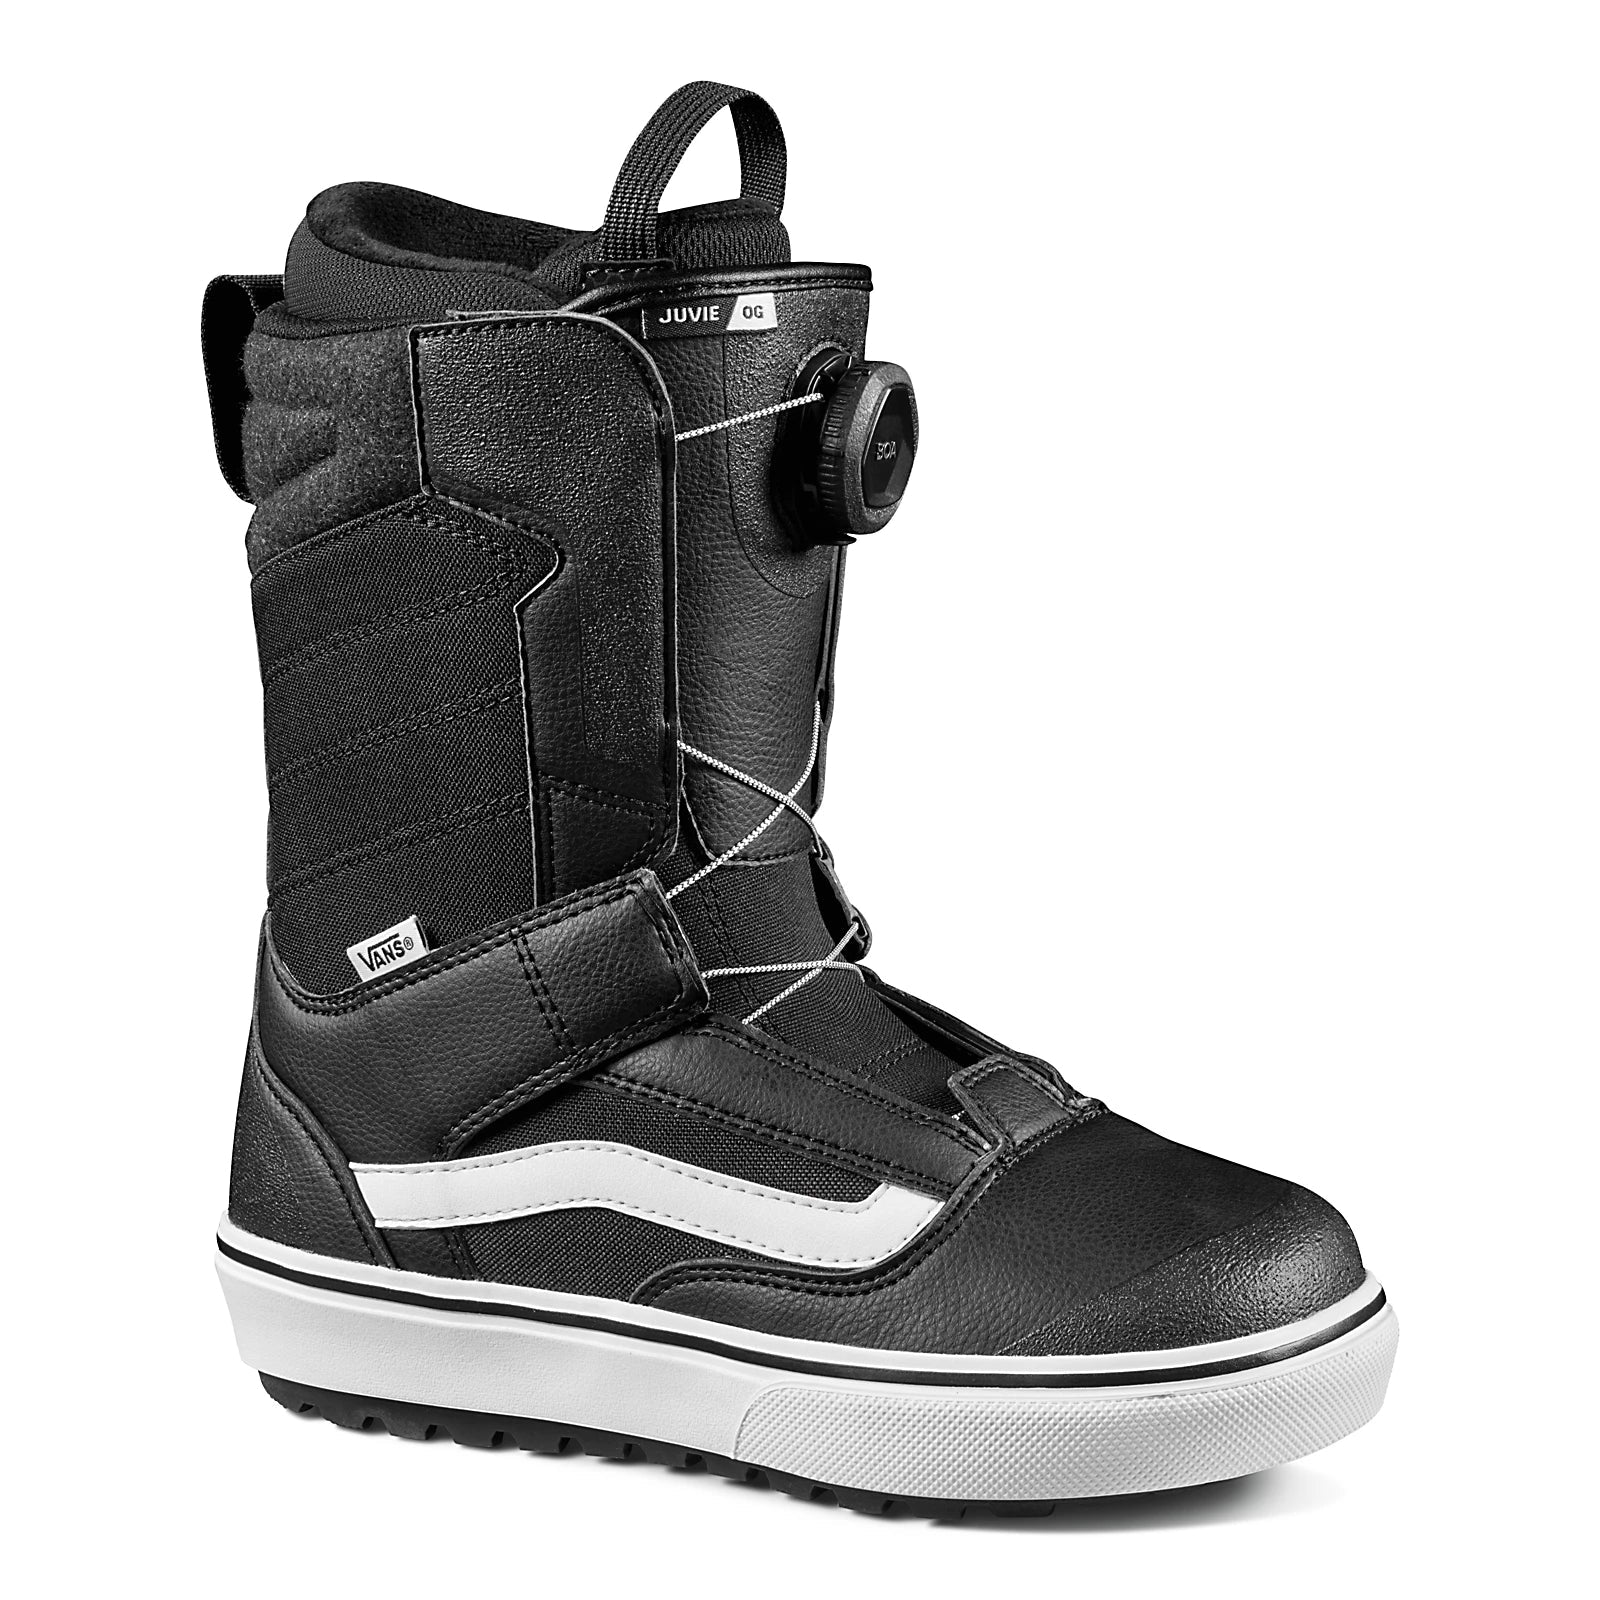 VANS Youth Juvie OG Snowboard Boots Black/White 2023 Youth Snowboard Boots Vans 